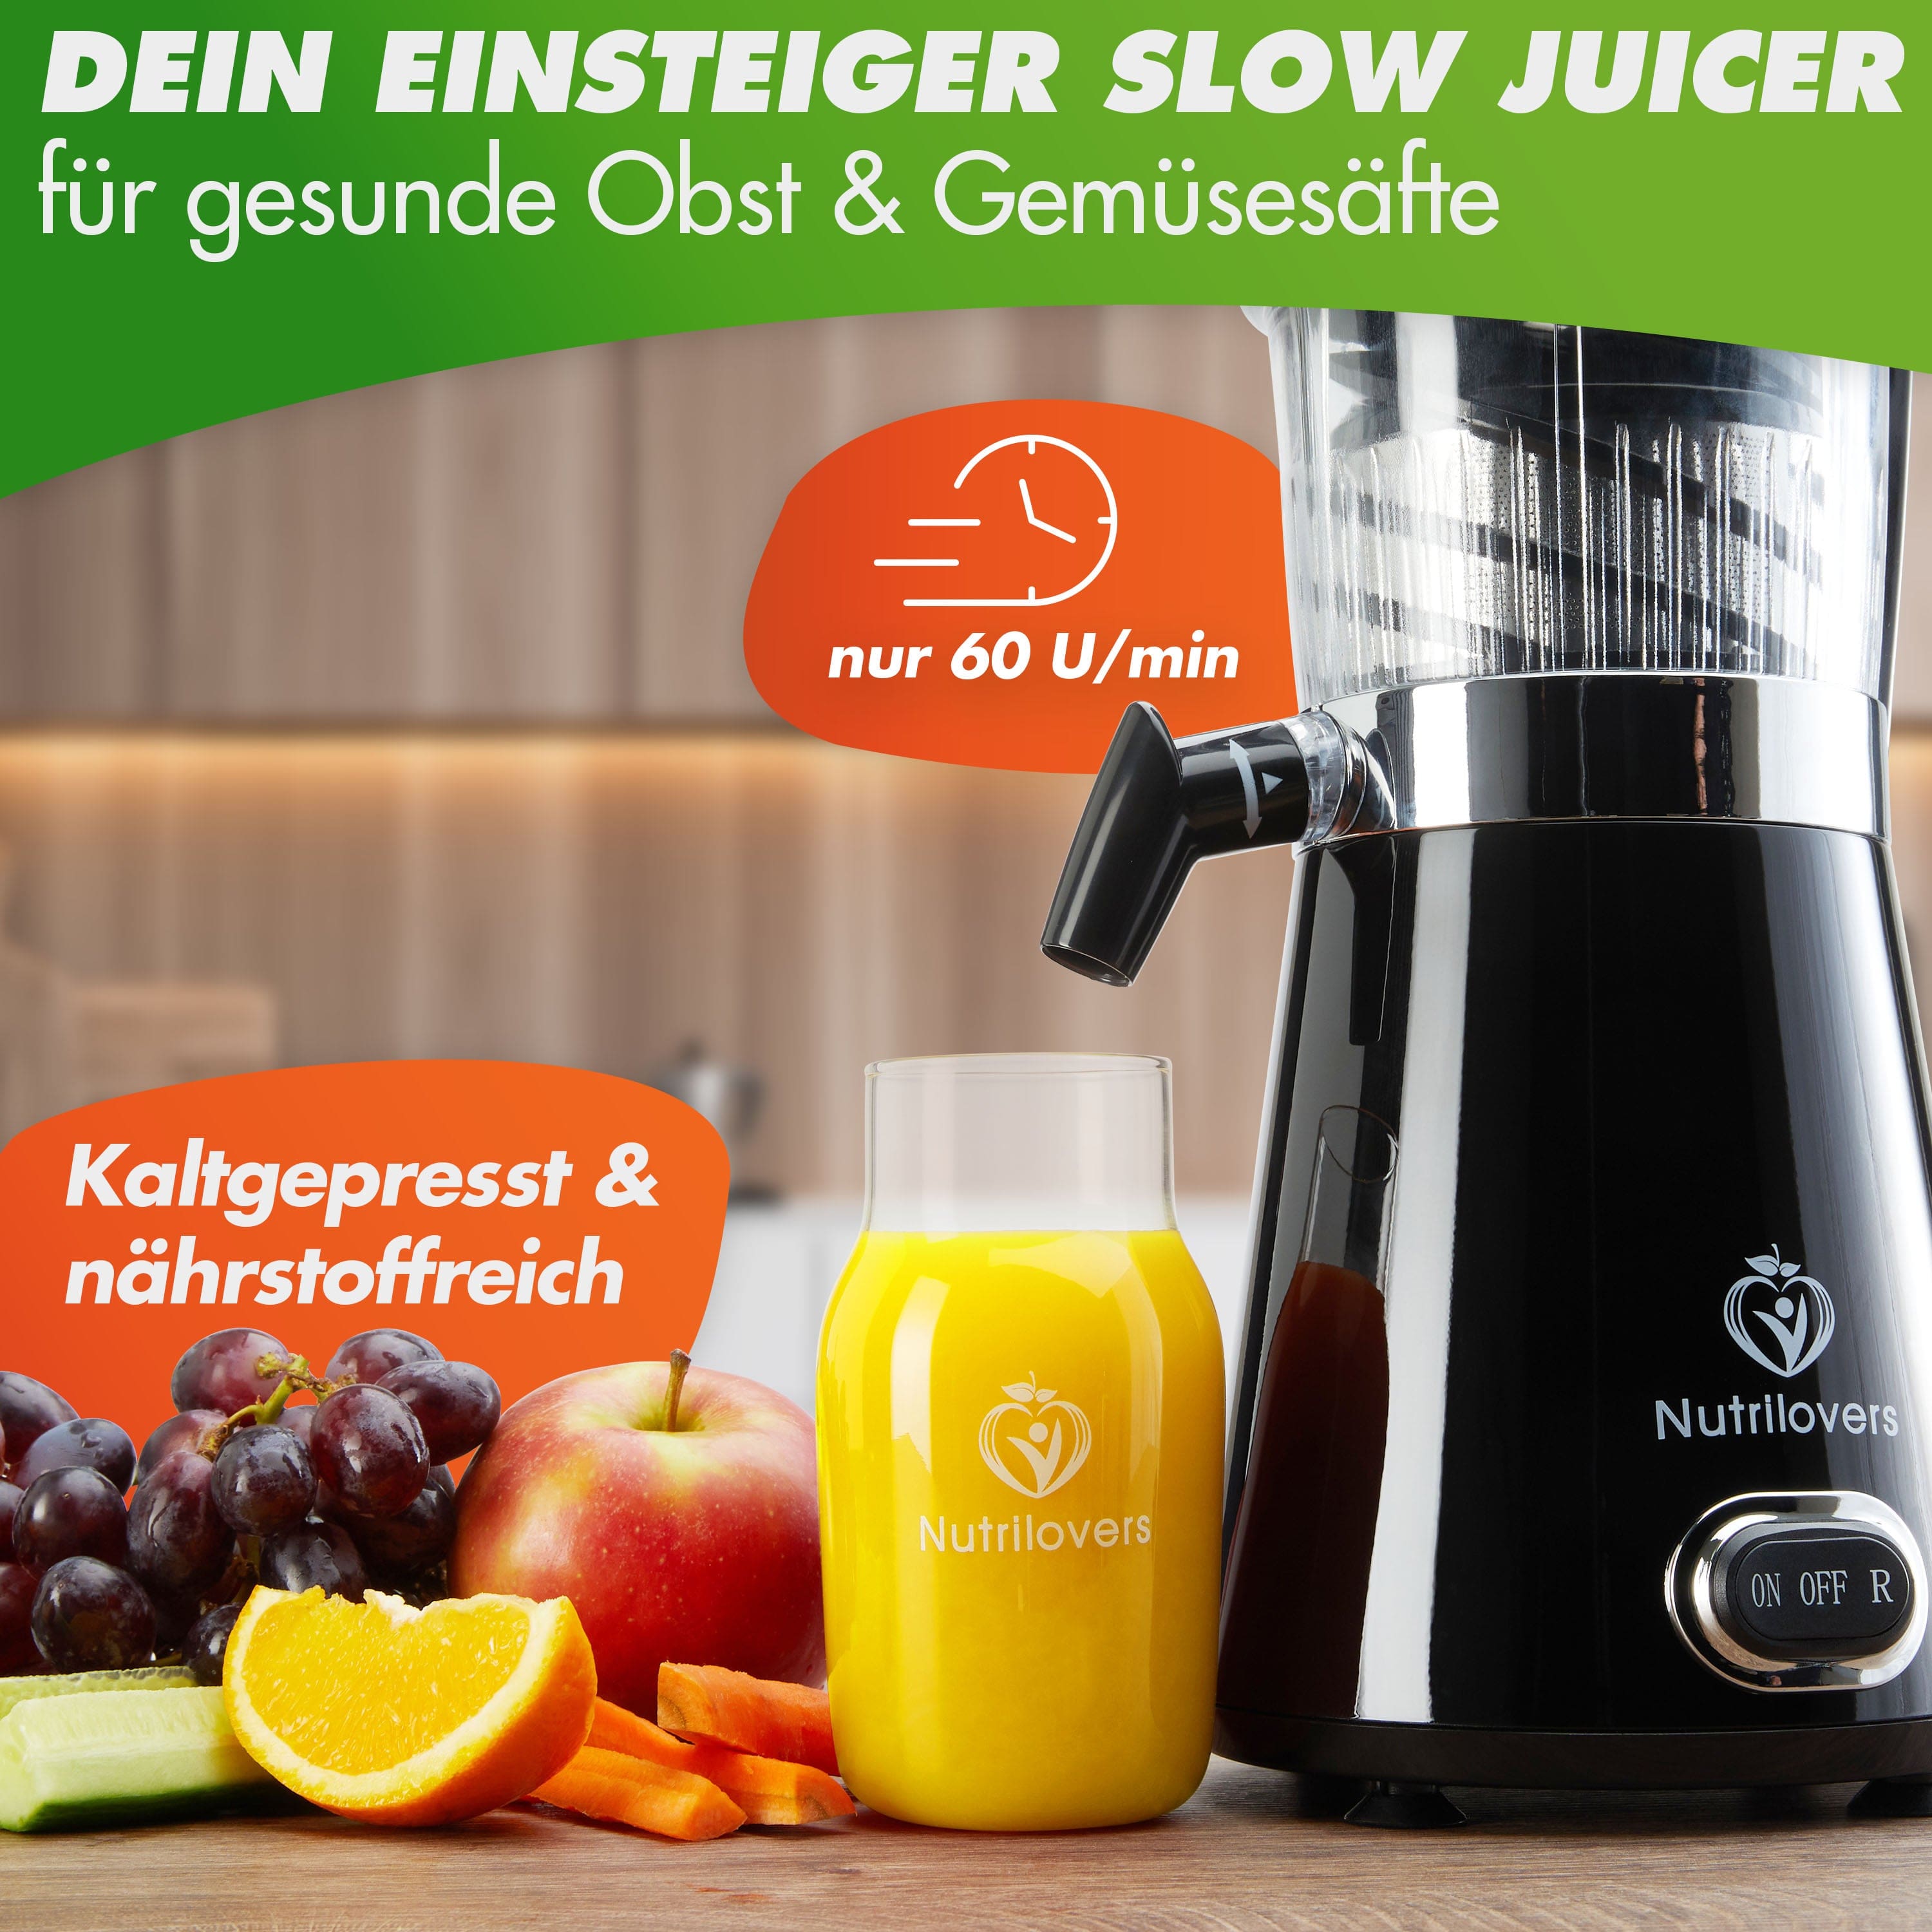 Nutrilovers Slow Juicer BLACK PEPPER NUTRI-PRESS Slow Juicer für Einsteiger | BPA-Frei (Black Pepper) kuechengeraete haushaltsgeraete WissenWasDrinIst